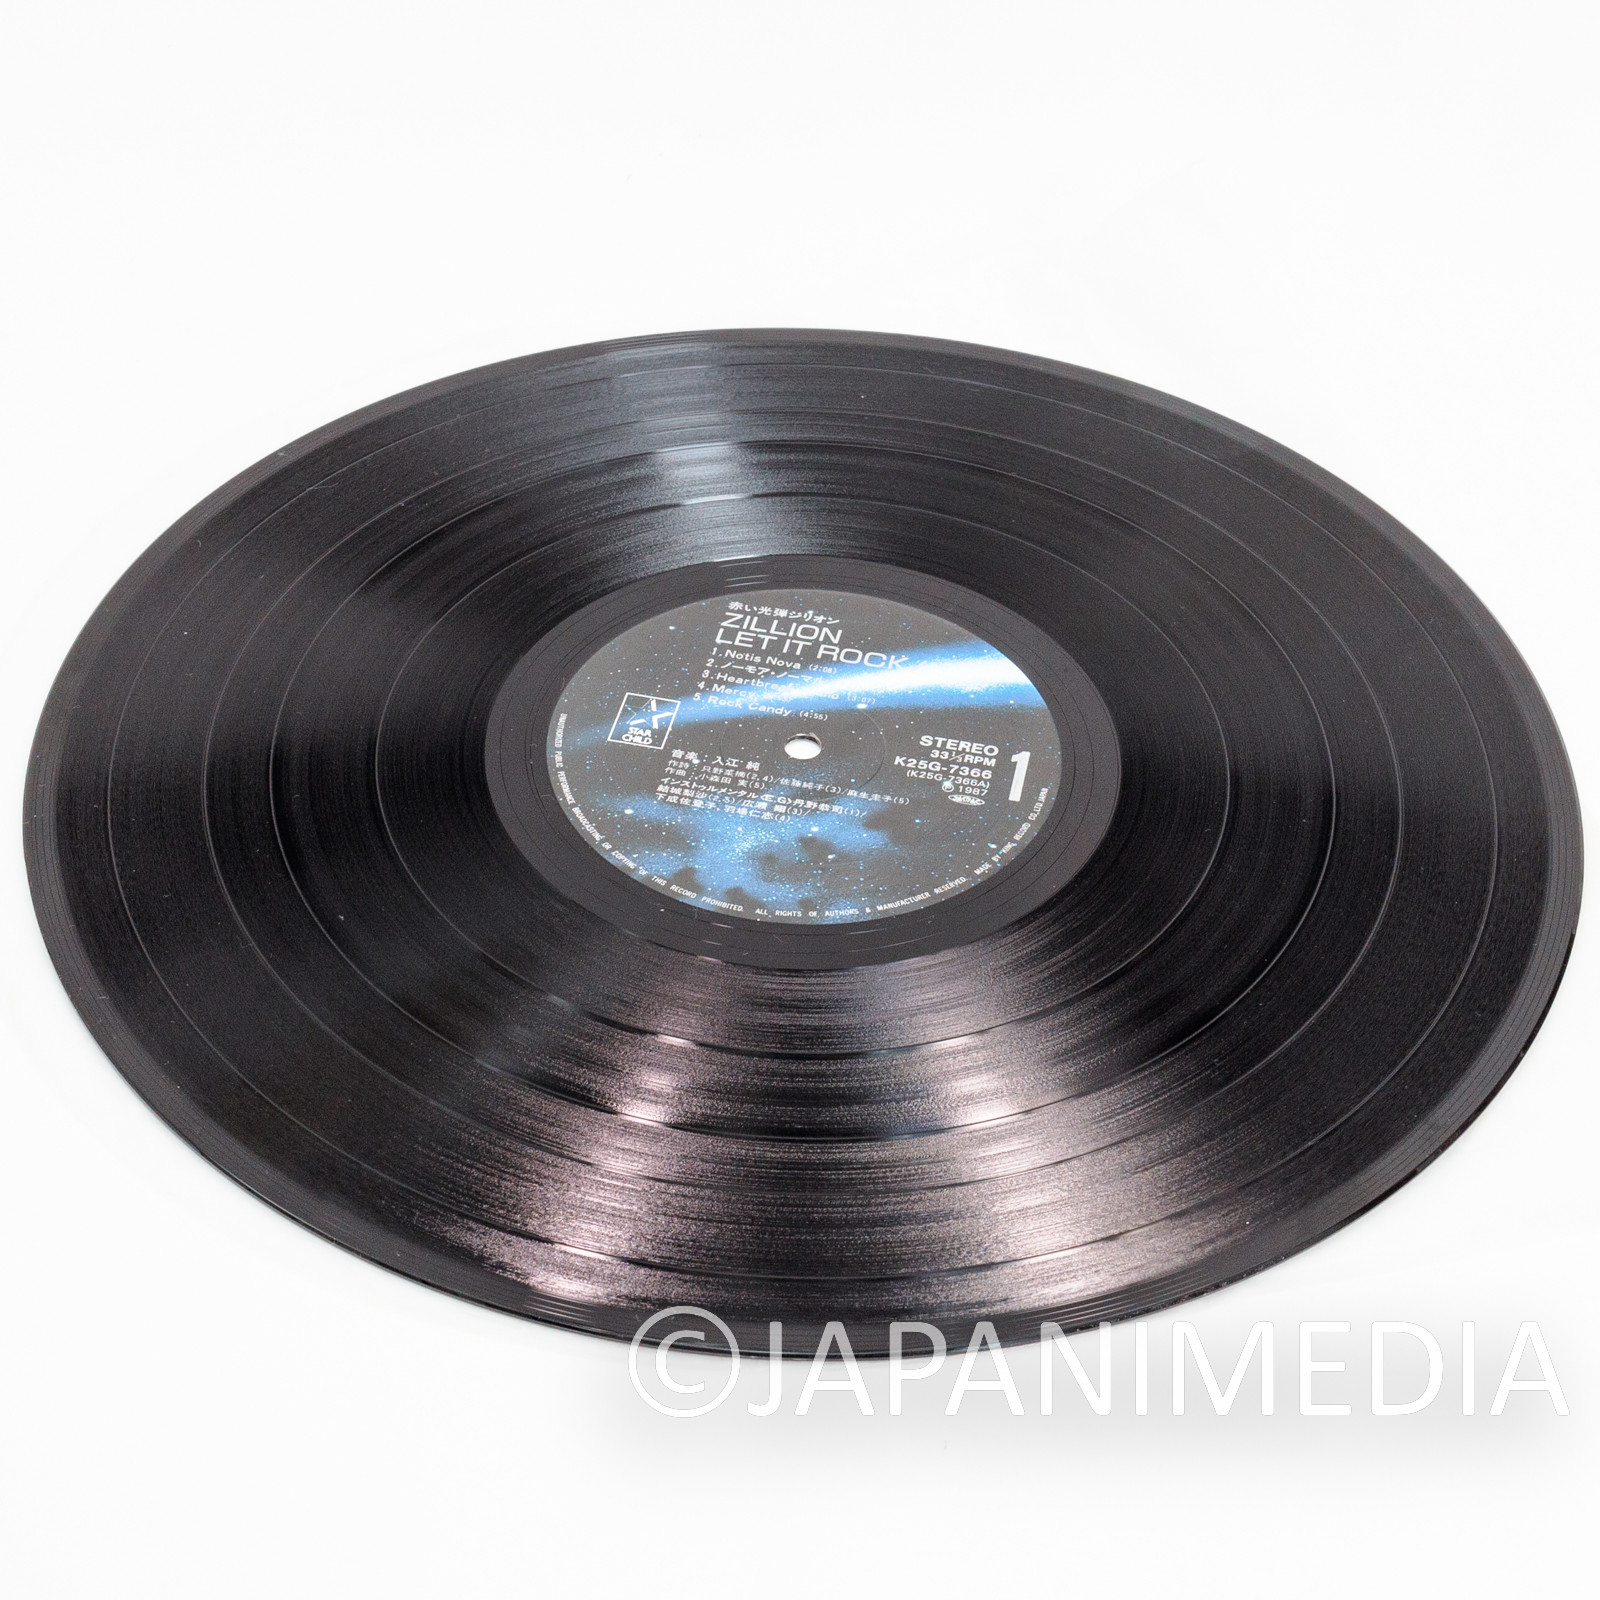 Red Photon Zillion Let it Rock LP Vinyl Record K25G-7366